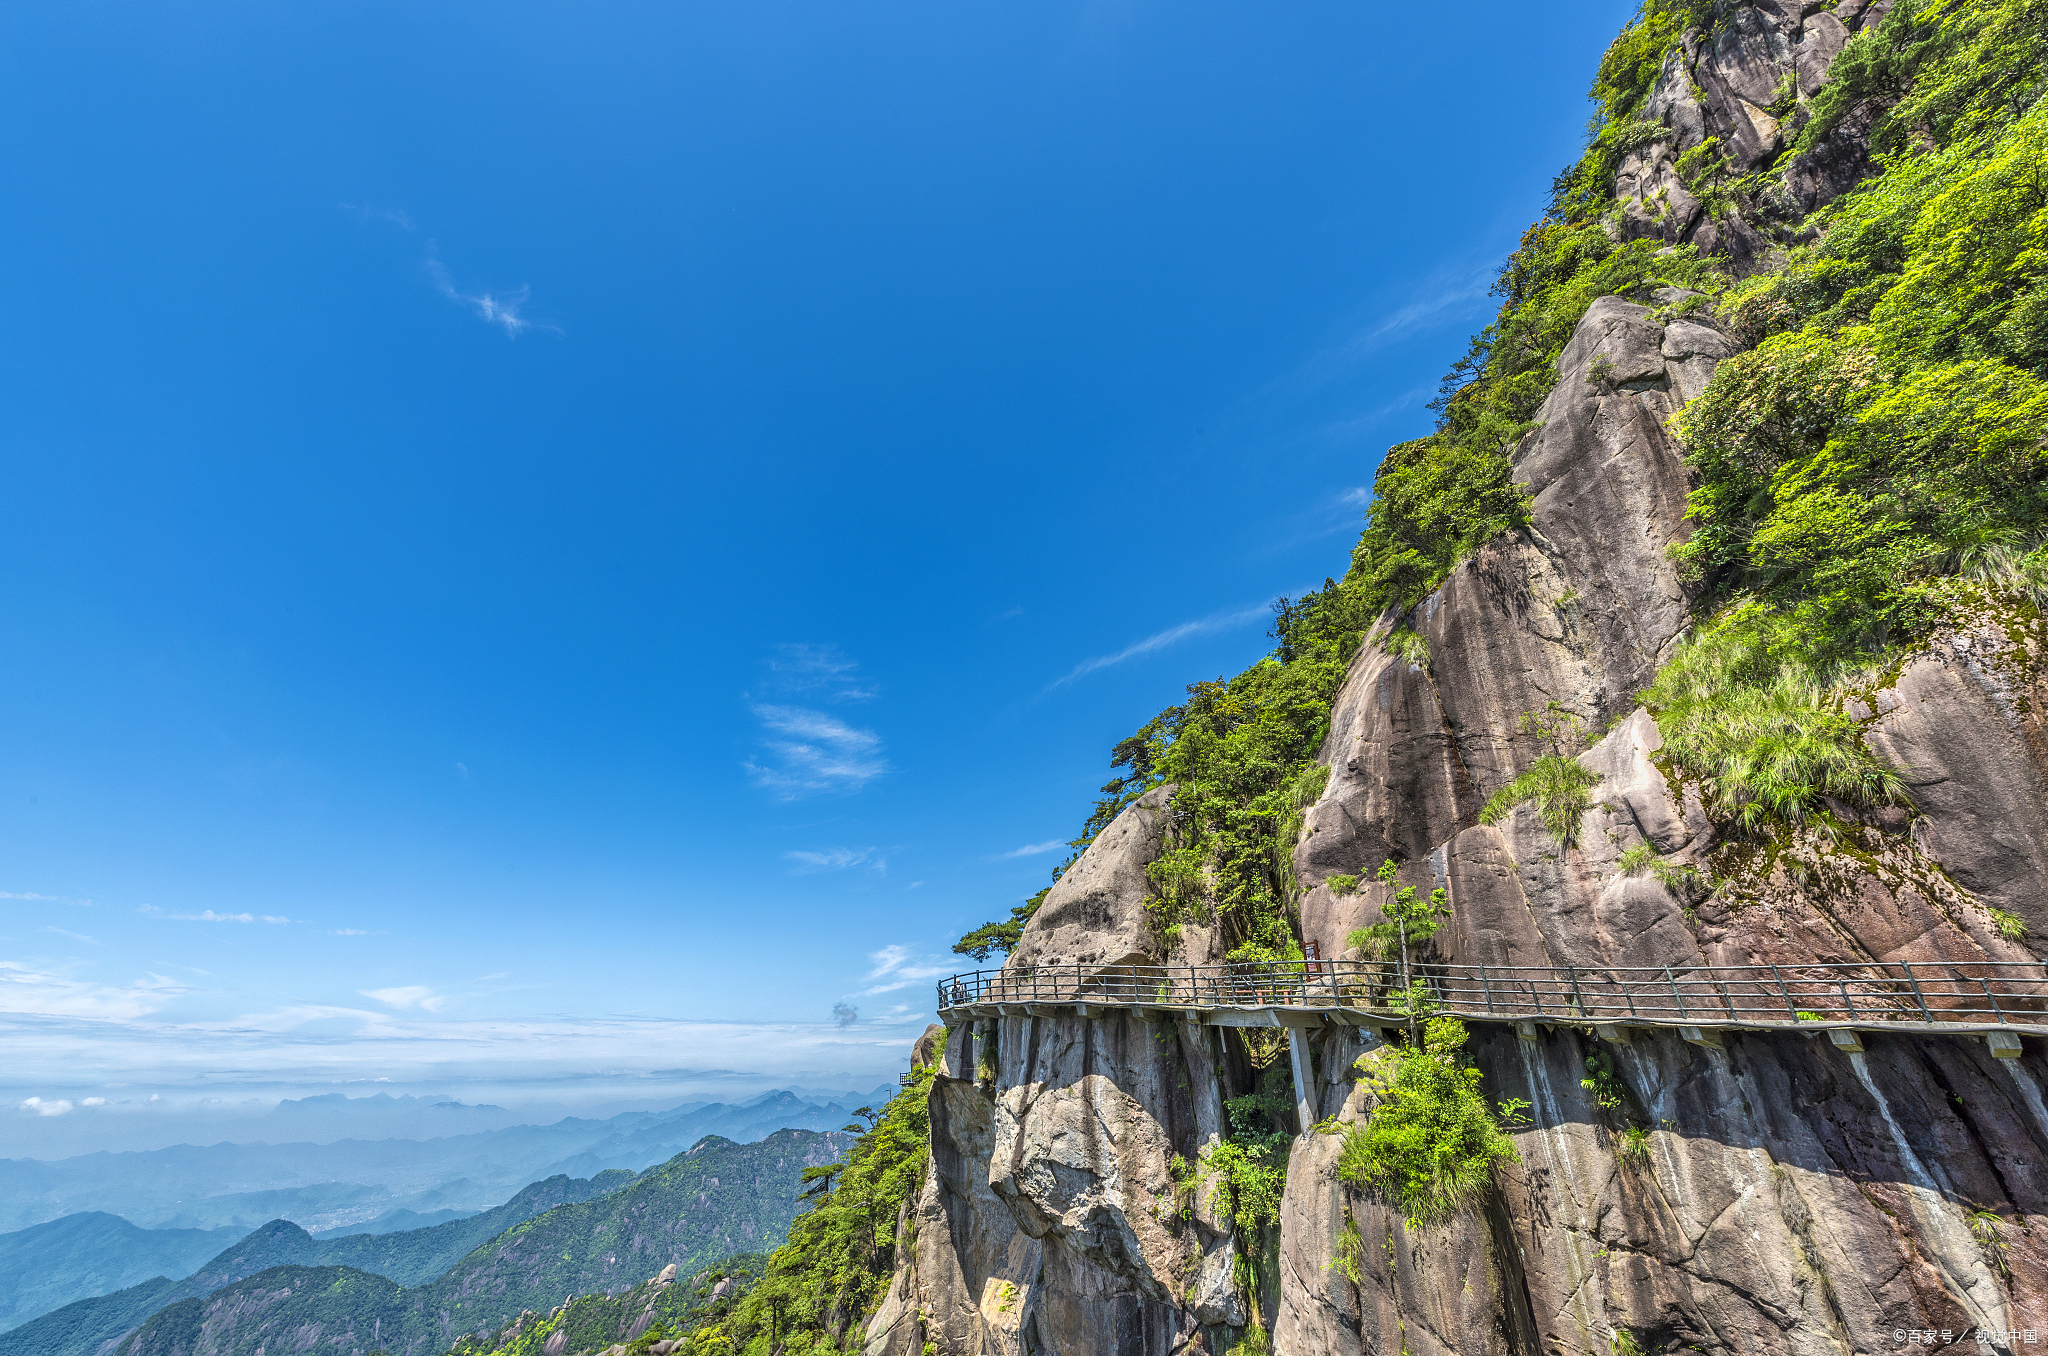 黄山,以其壮丽的山川风光,位列于中国五大名山之一,每年都吸引着无数